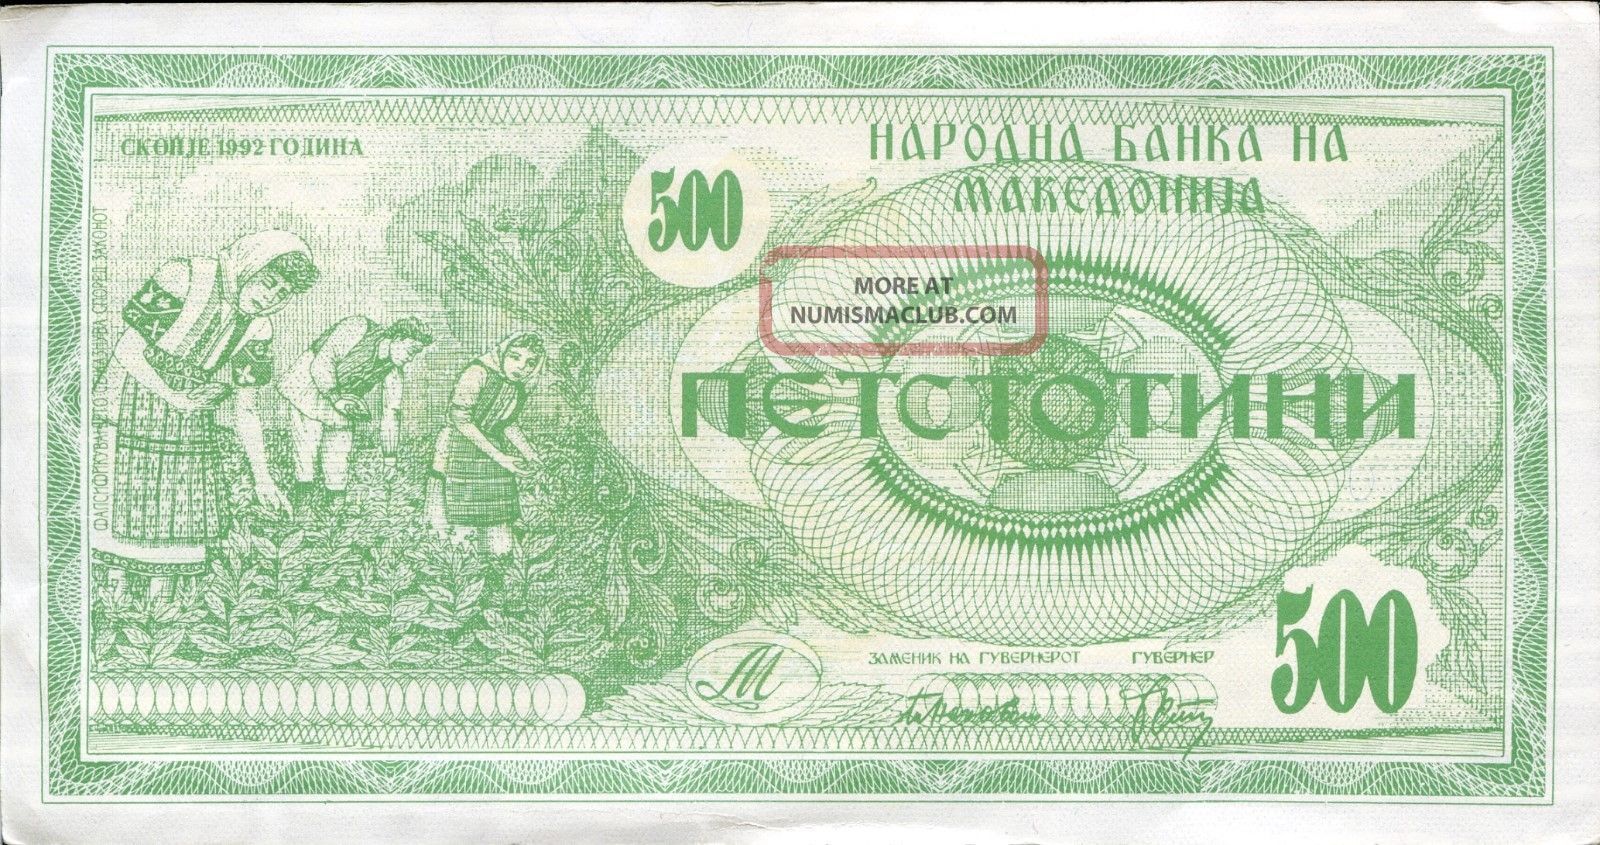 Macedonia Fyrom 500 Denar 1992 P - 5 Ef Circulated Banknote